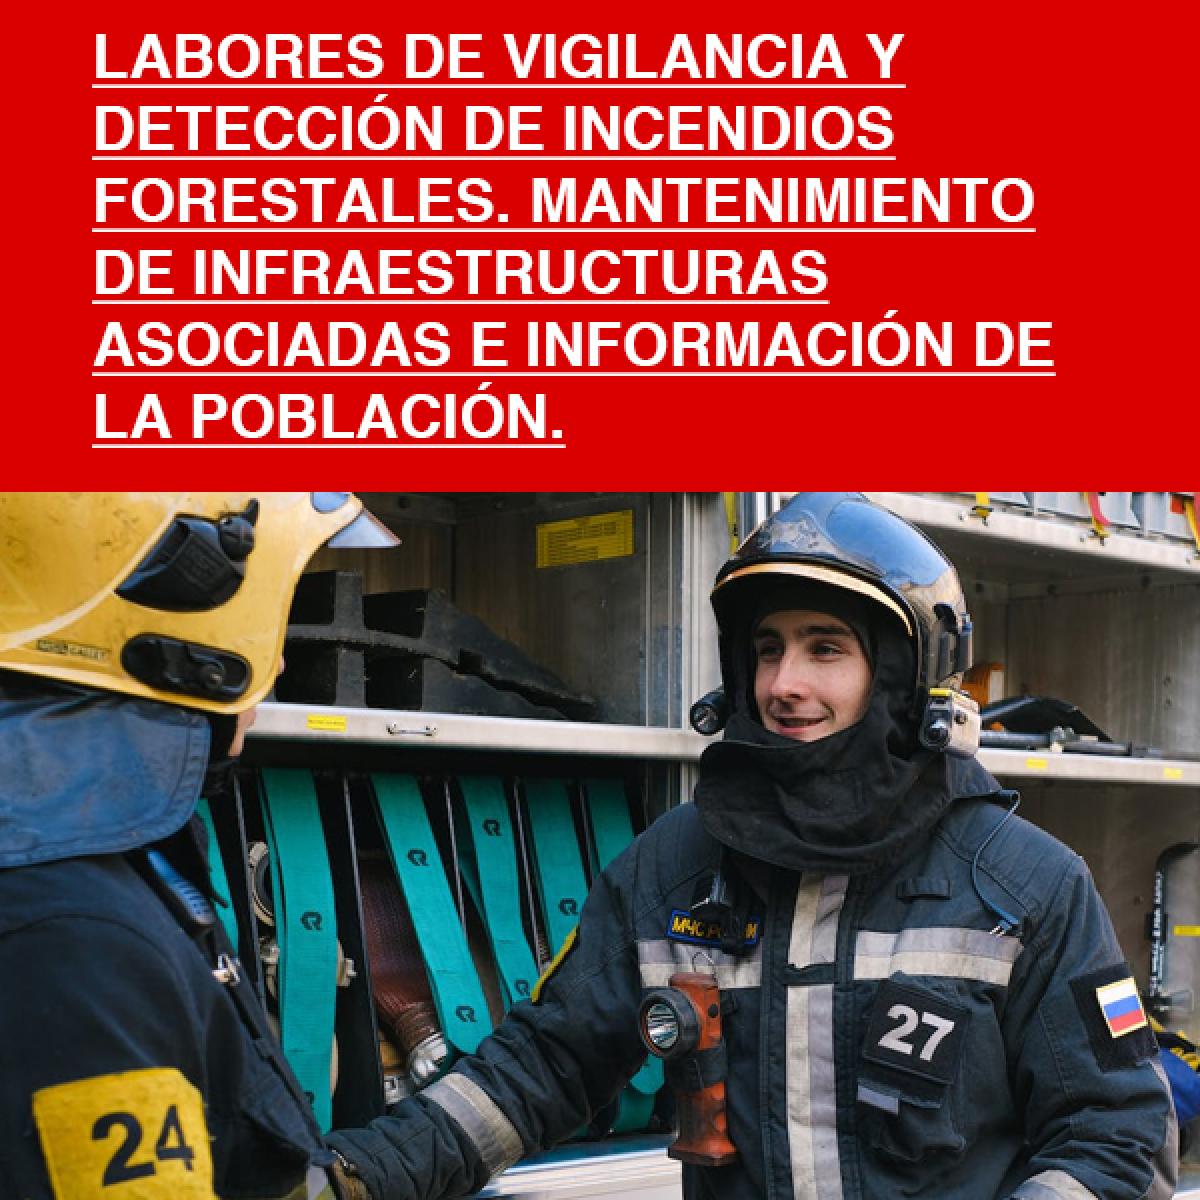 Labores de vigilancia y detección de incendios forestales. Mantenimiento de infraestructuras asociadas e información de la población.